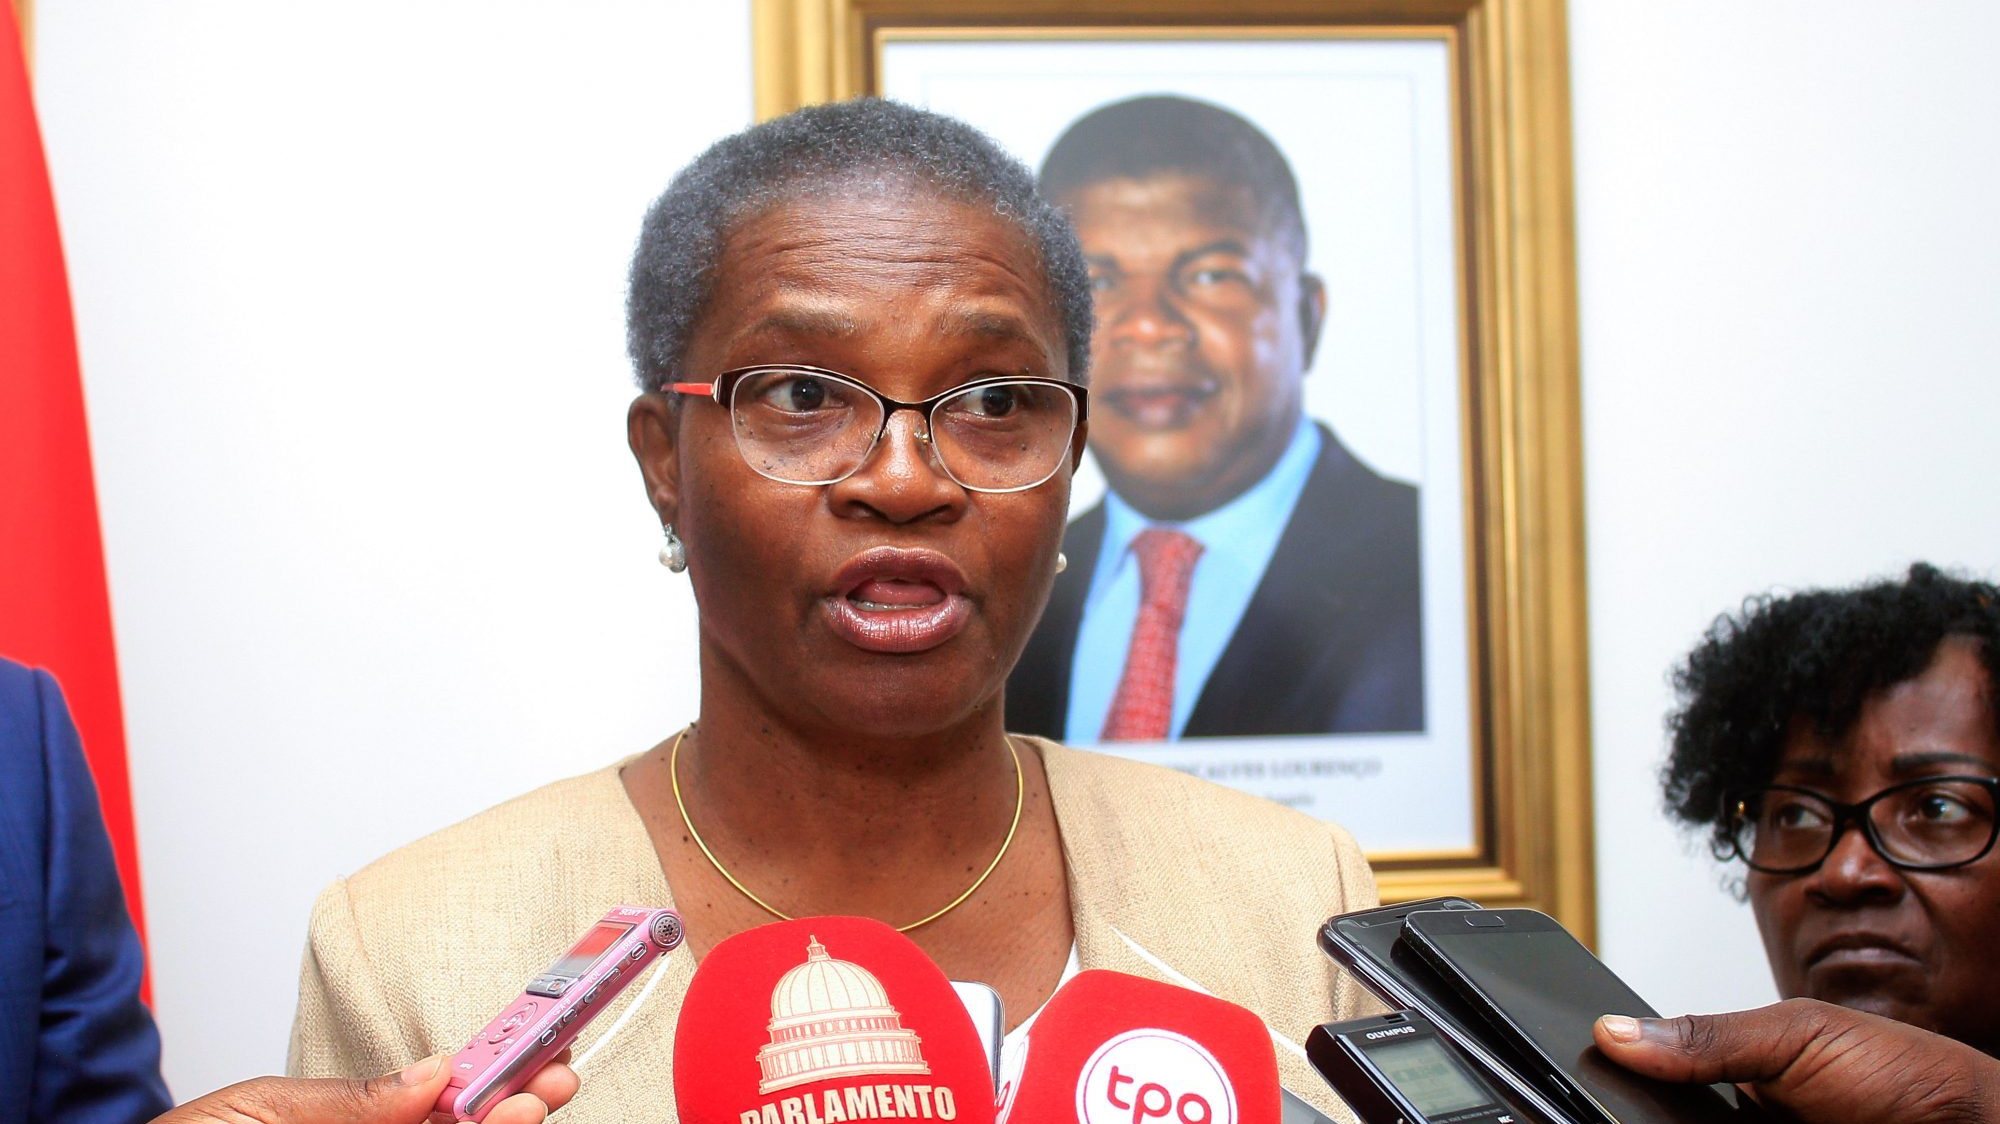 Tribunal de Contas angolano terá gastado quatro milhões de dólares em mobílias a expensas do Estado angolano